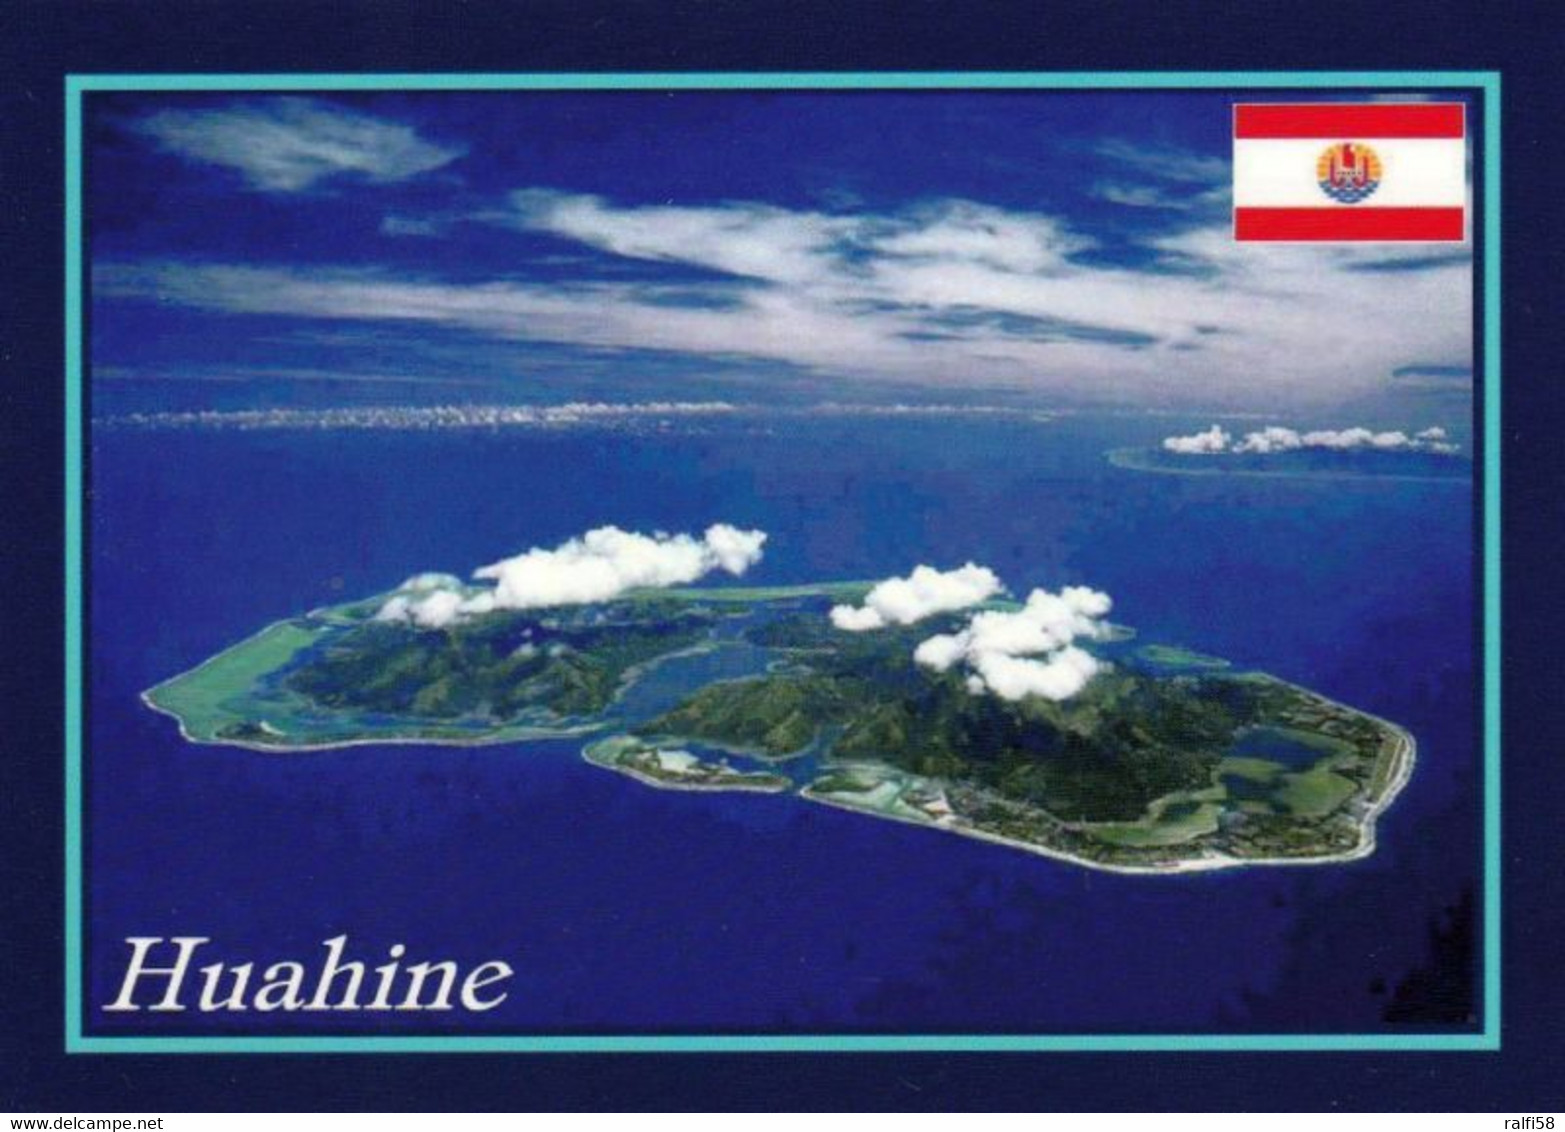 1 AK Blick Auf Das Atoll Huahine * French Polynesia * Französisch Polynesien * South Pacific * Luftbildaufnahme * - French Polynesia